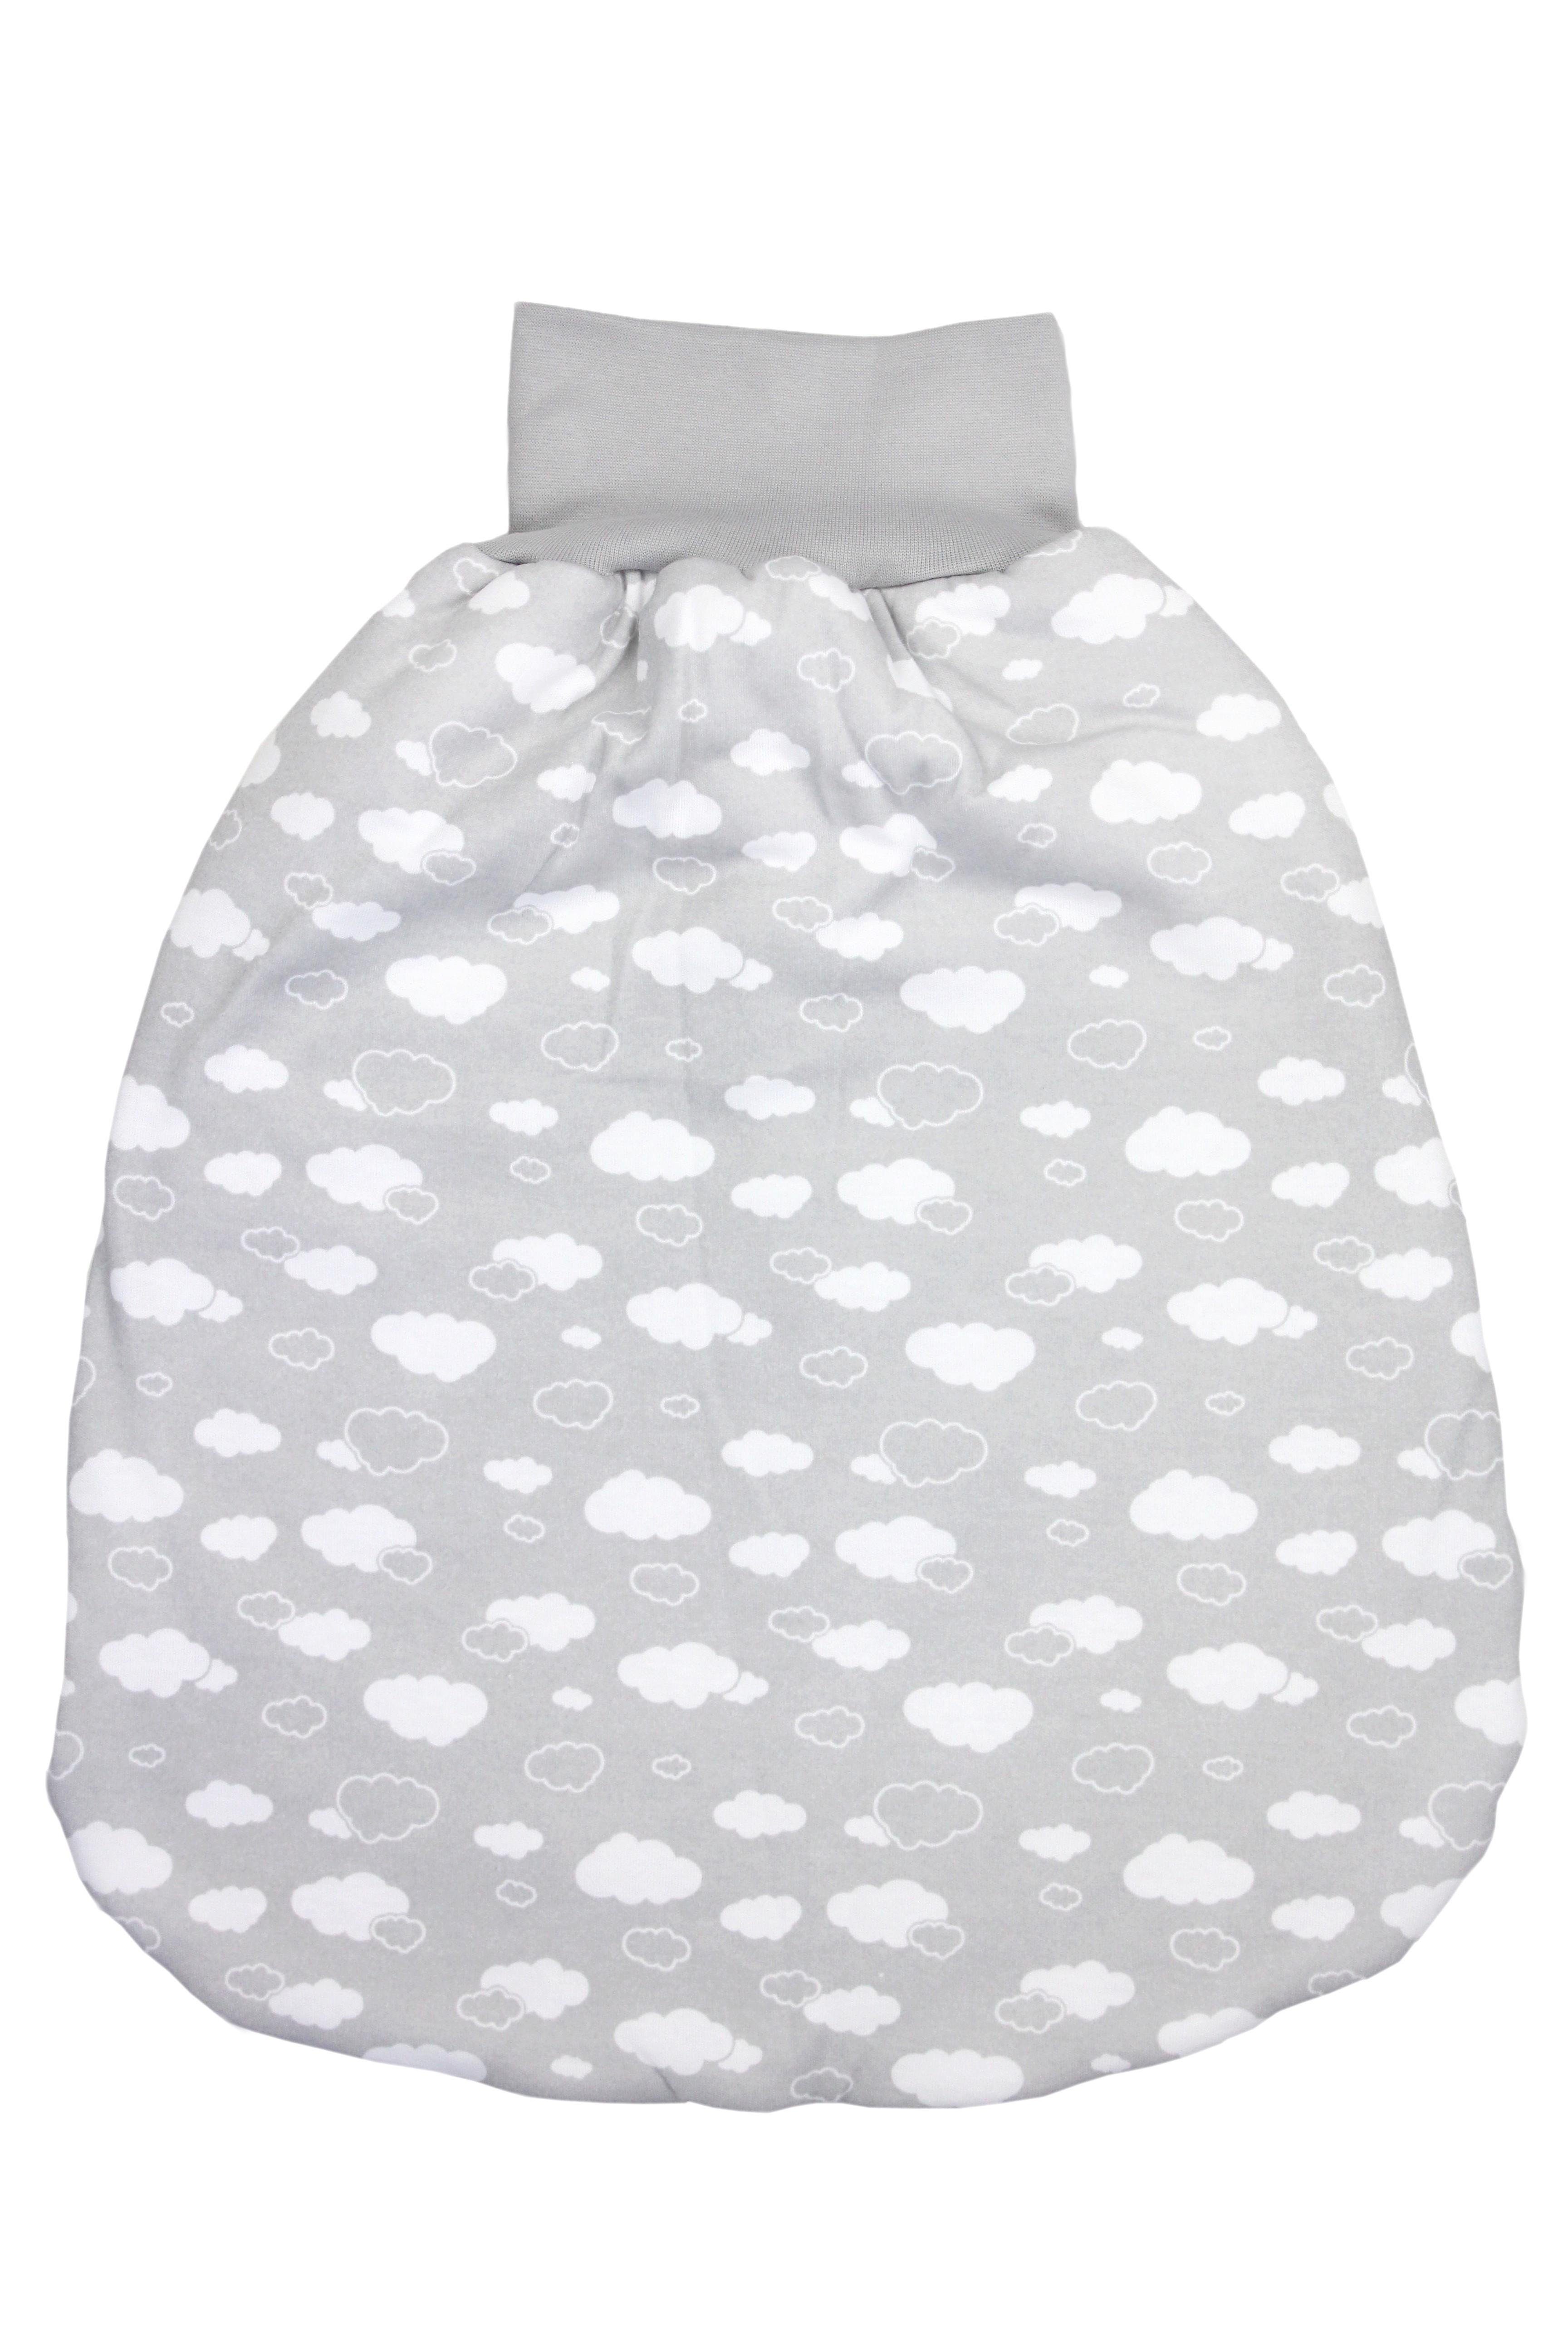 Unisex Babyschlafsack Bund TupTam Strampelsack Baby Grau TupTam mit breitem Wattiert Wolken